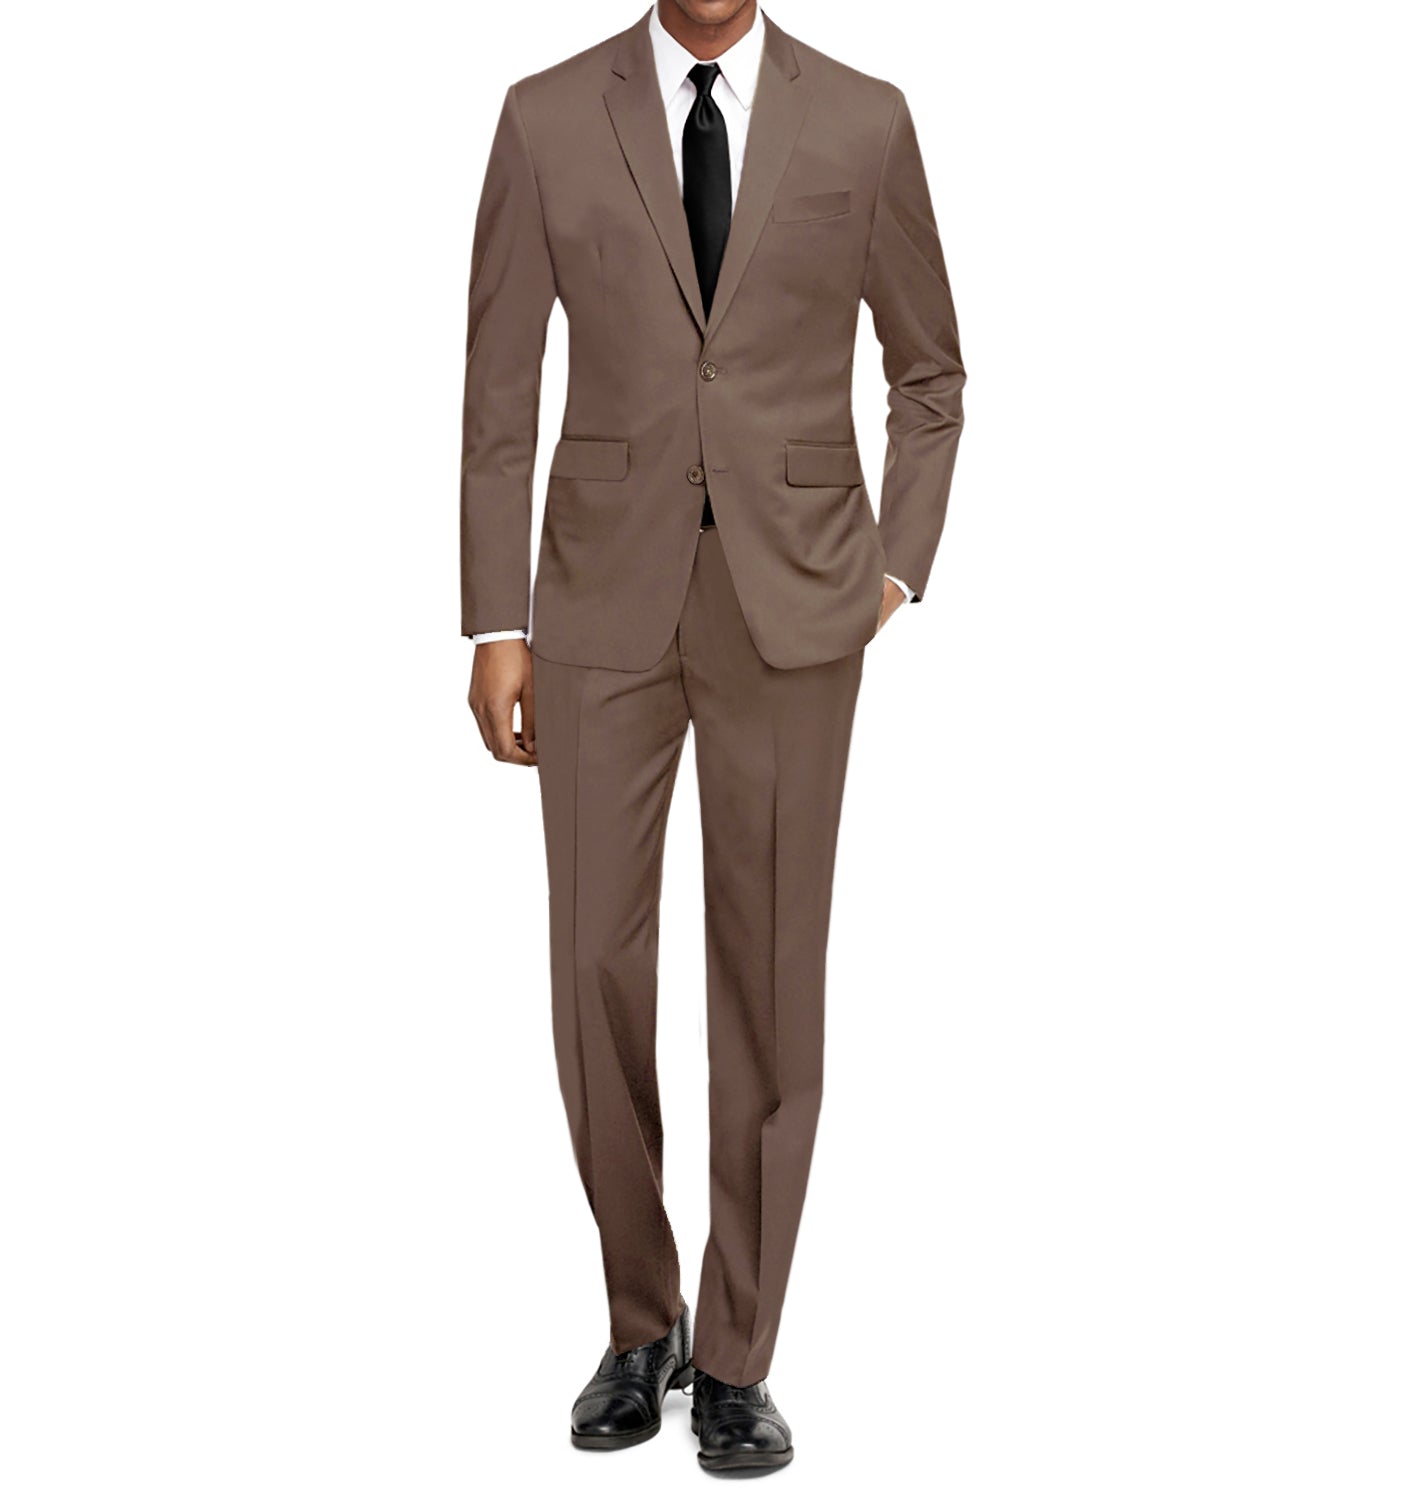 Raphael Mens Tan Light Brown Slim Fit Two Button Suit | The Suit Depot